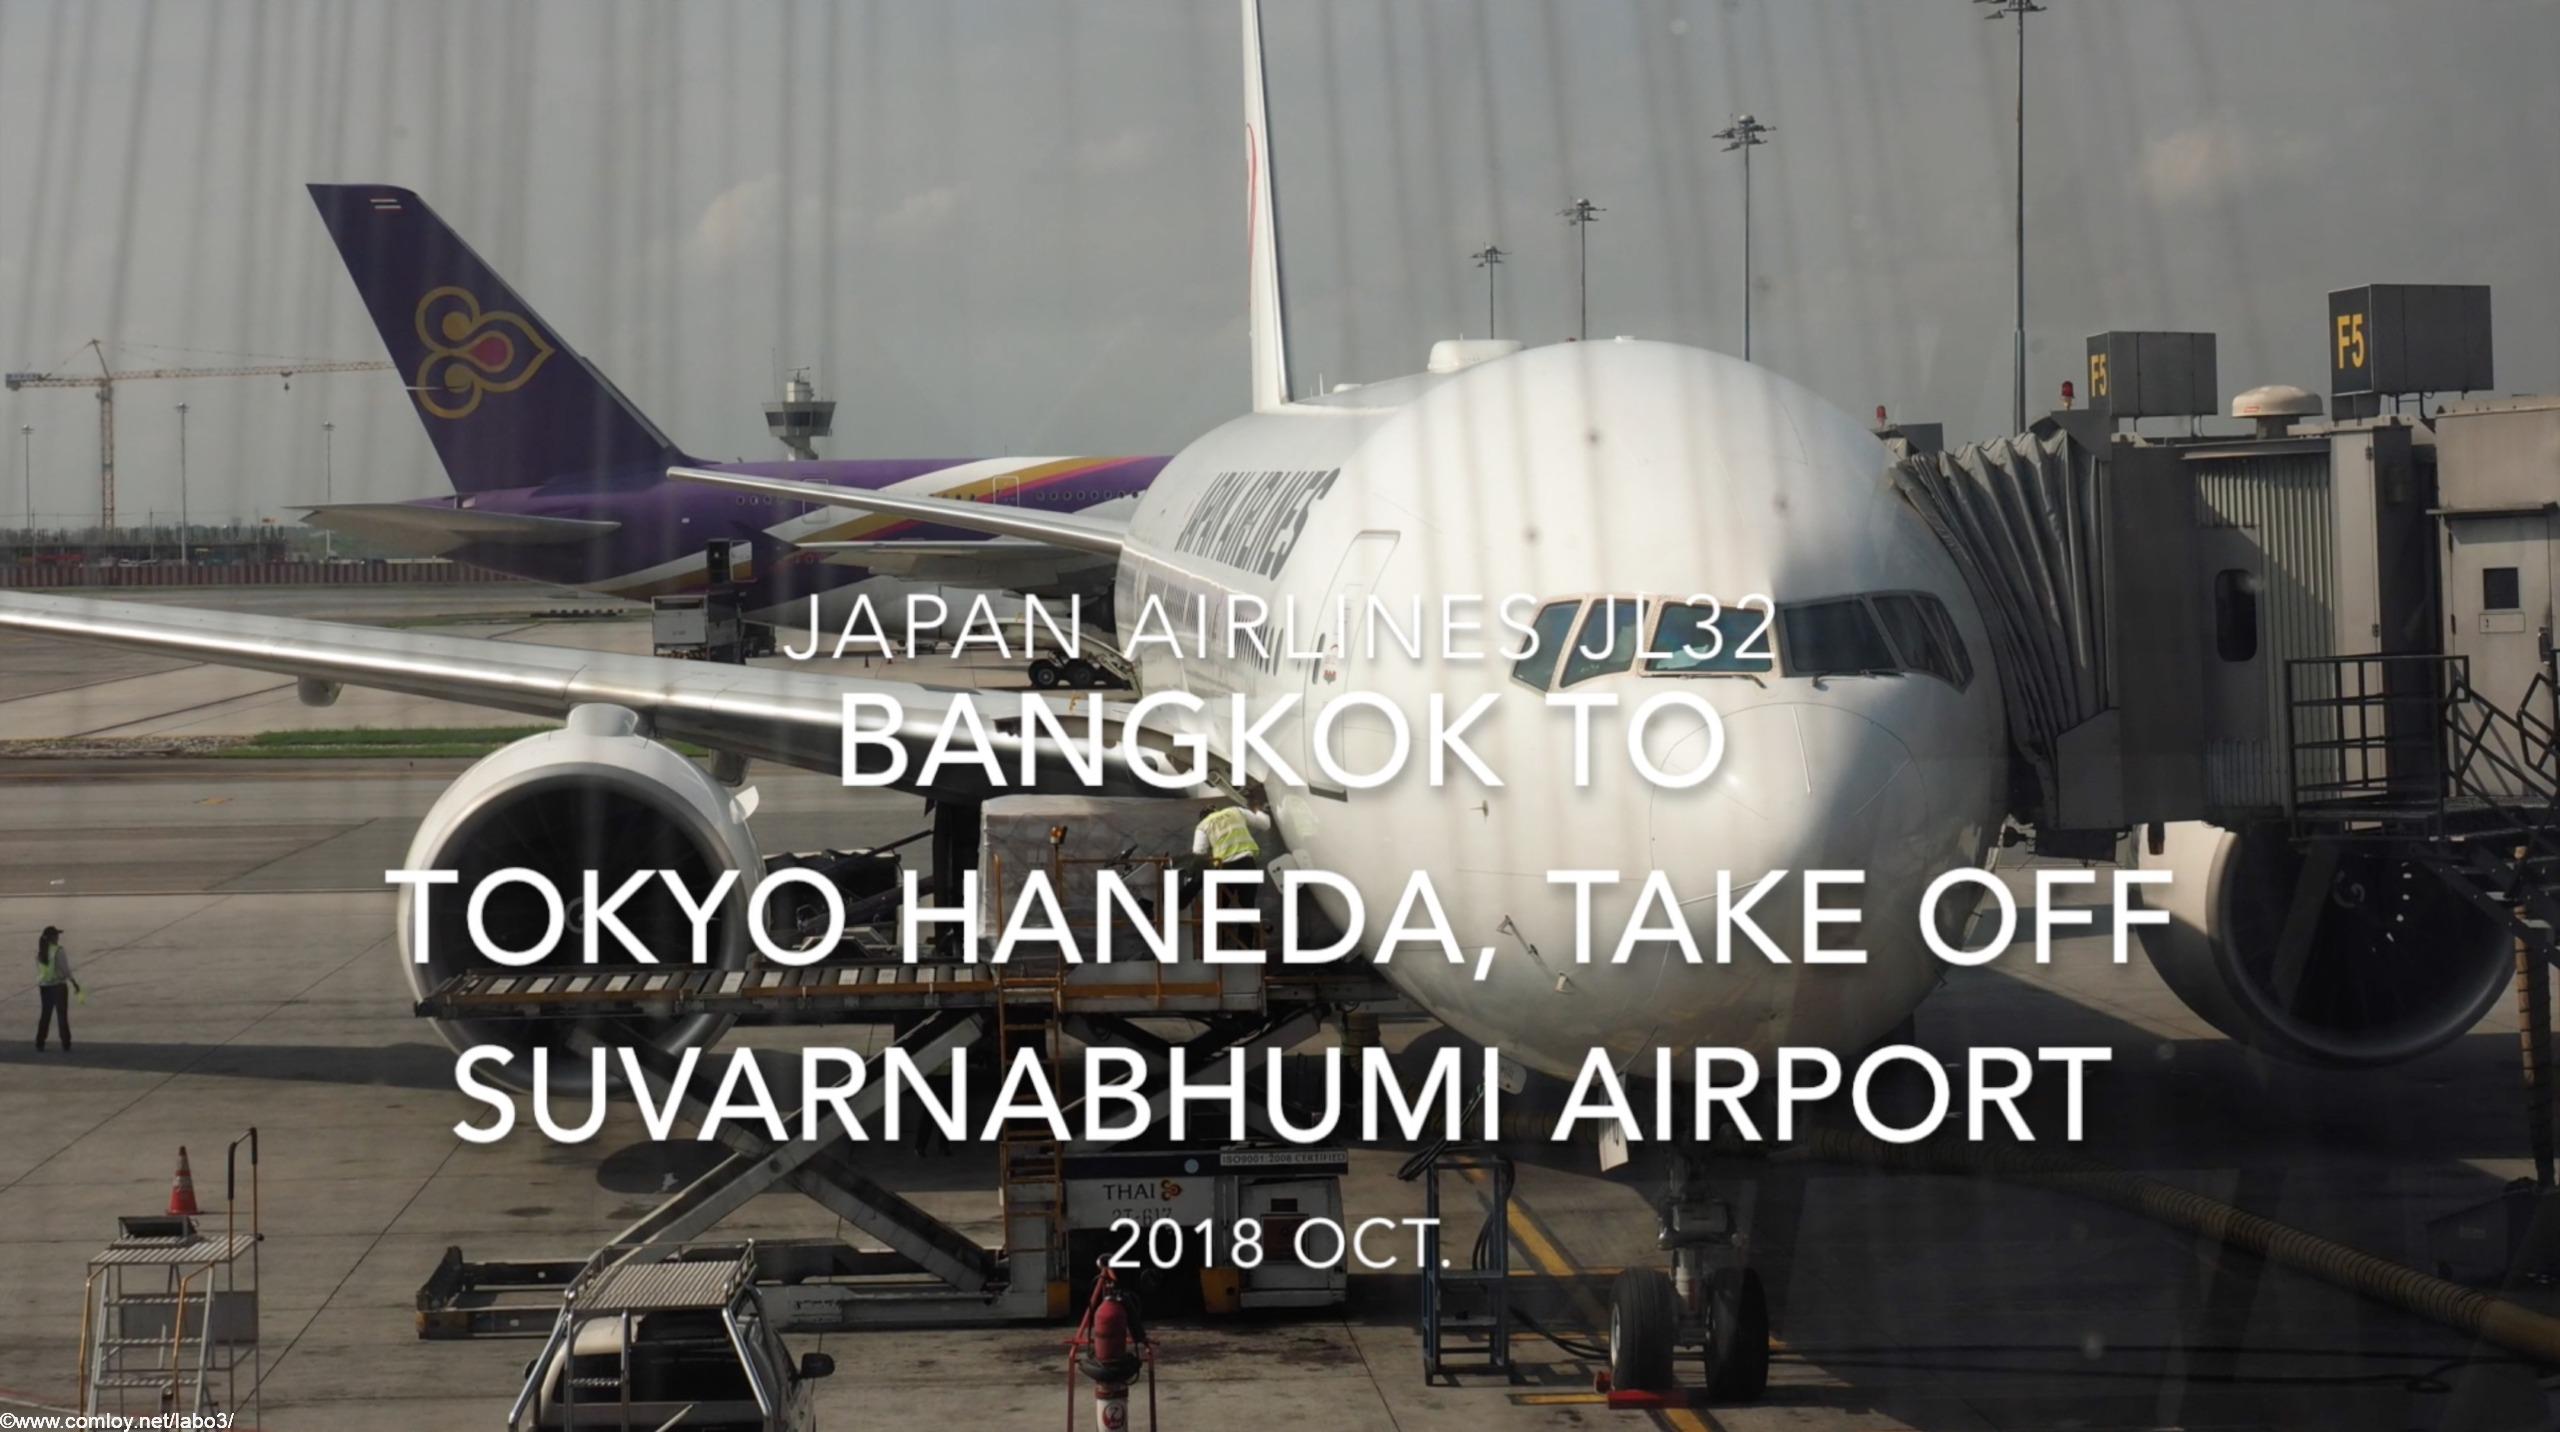 【機内から離着陸映像】2018 OCT Japan Airlines JL32 Bangkok to TOKYO HANEDA, Take off Bangkok Suvarnabhumi airport 日本航空 バンコク - 羽田 スワンナプーム空港離陸